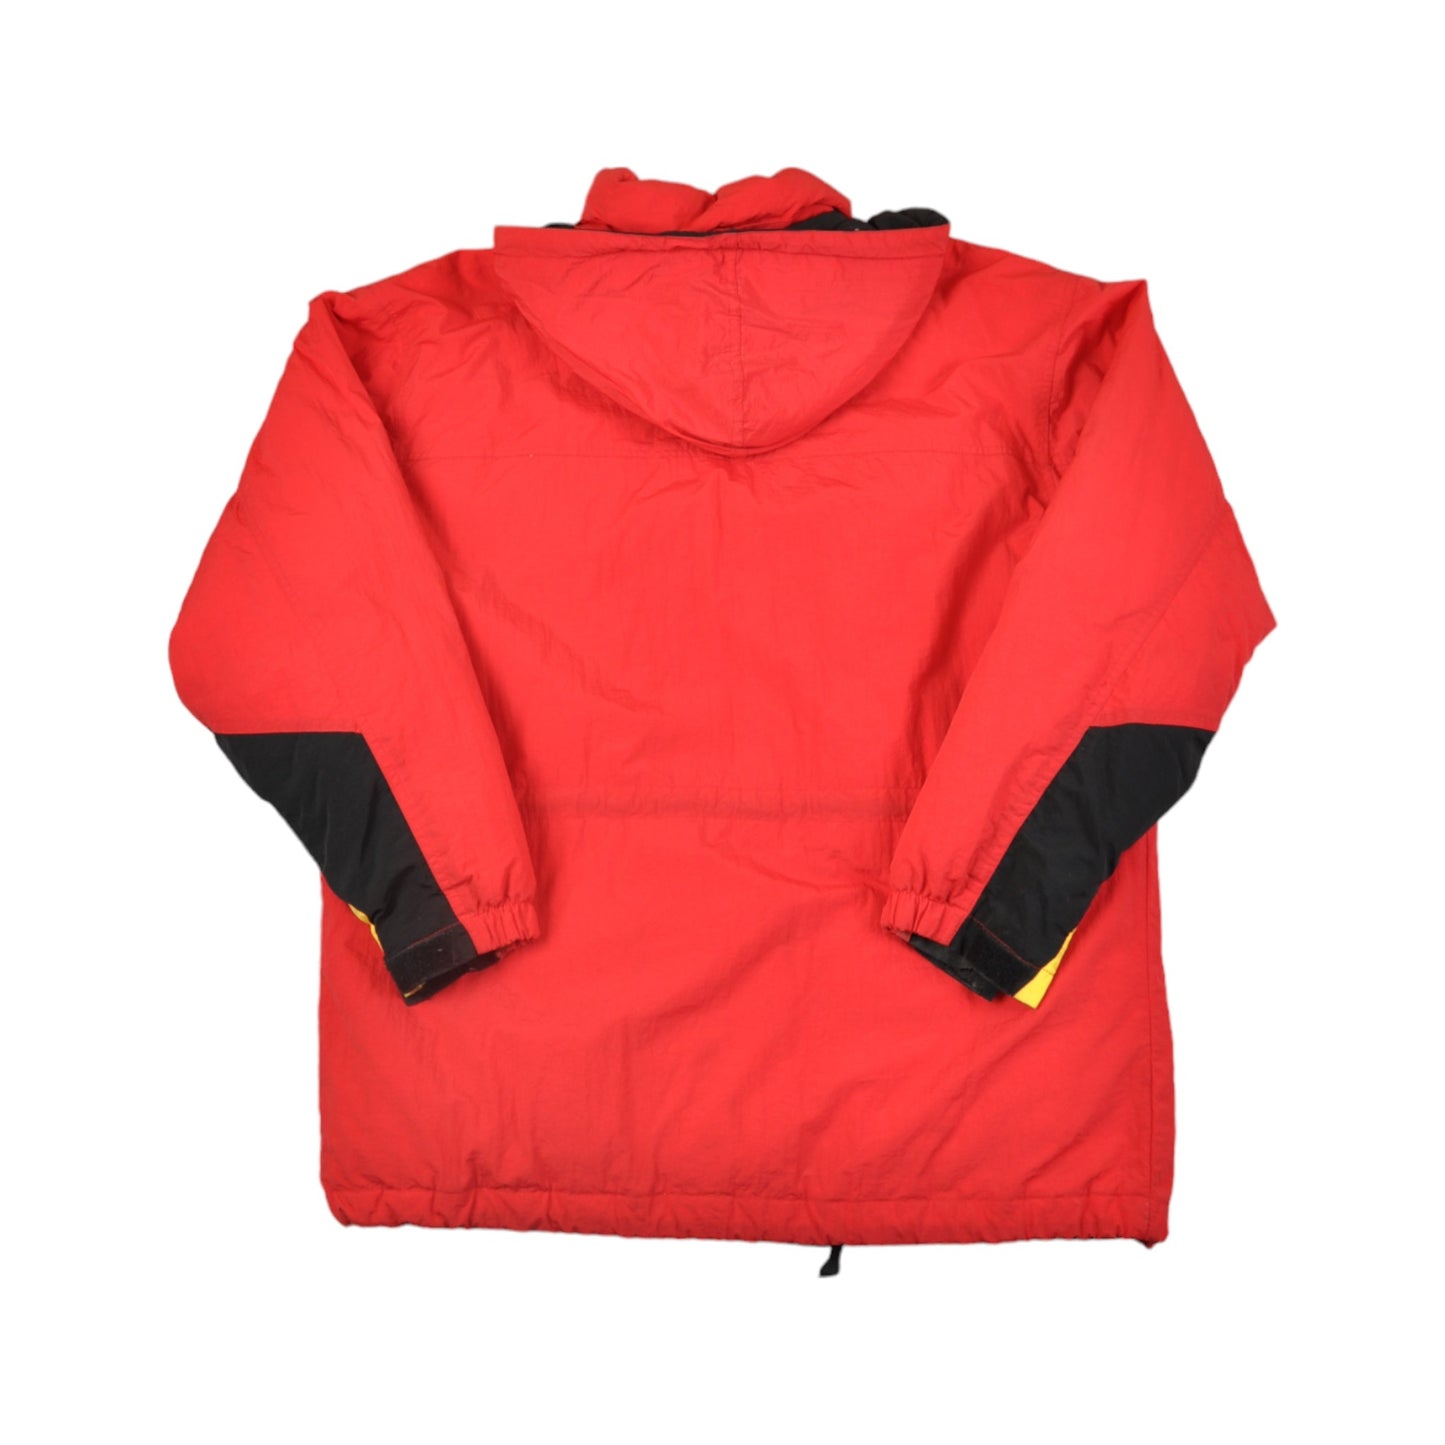 Vintage Marlboro Jacket Red Medium